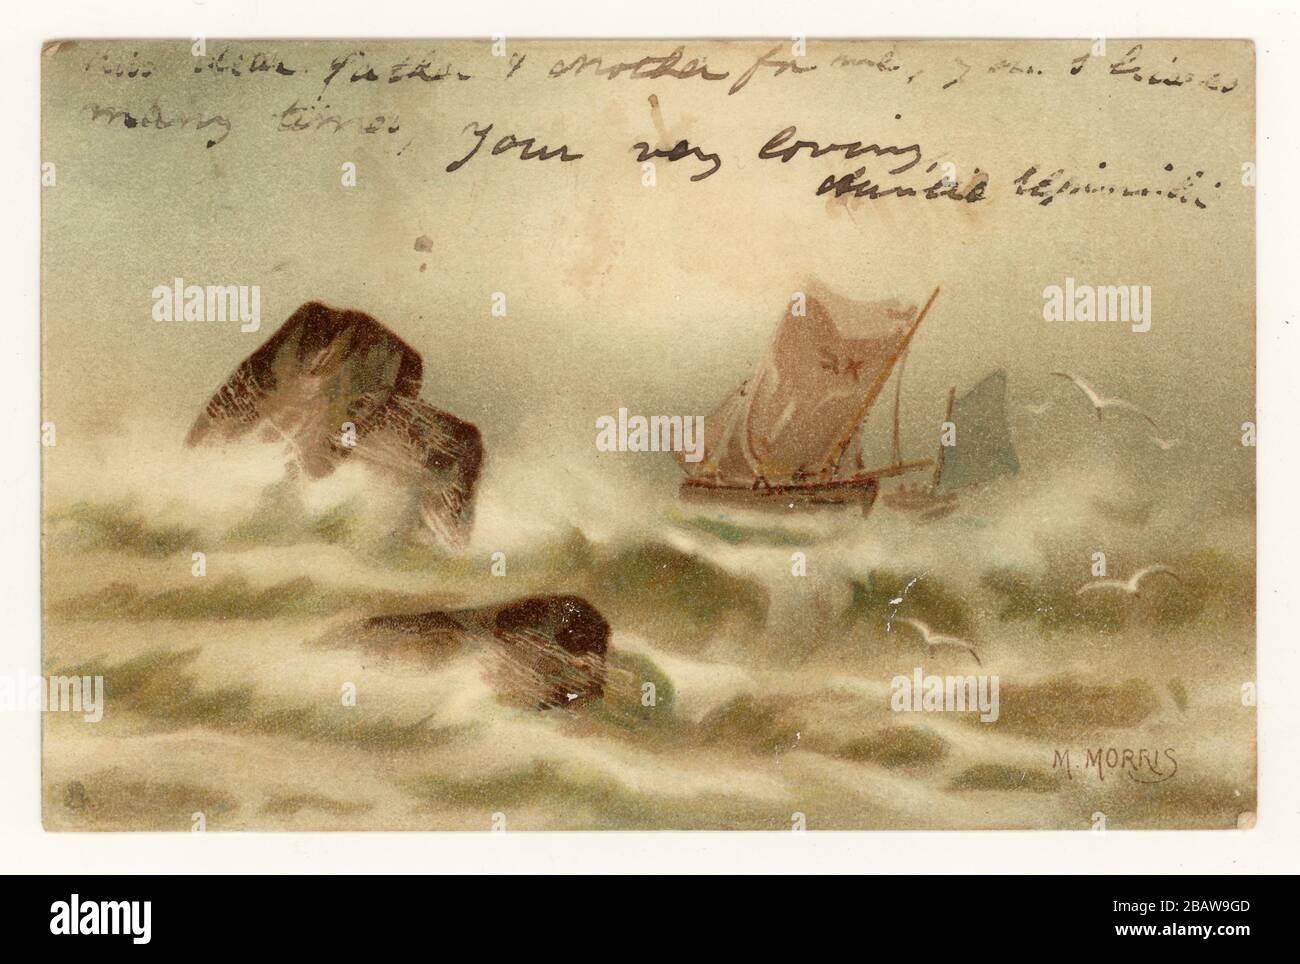 Début des années 1900, carte postale de voeux, sans partage de dos, avec l'écriture sur le devant, illustré par M. Morris, des bateaux de pêche sur les mers pluviales au large de la côte nord de Cornish, Cornwall, Angleterre, Grande-Bretagne, Royaume-Uni posté de Newquay en août 1904 Banque D'Images